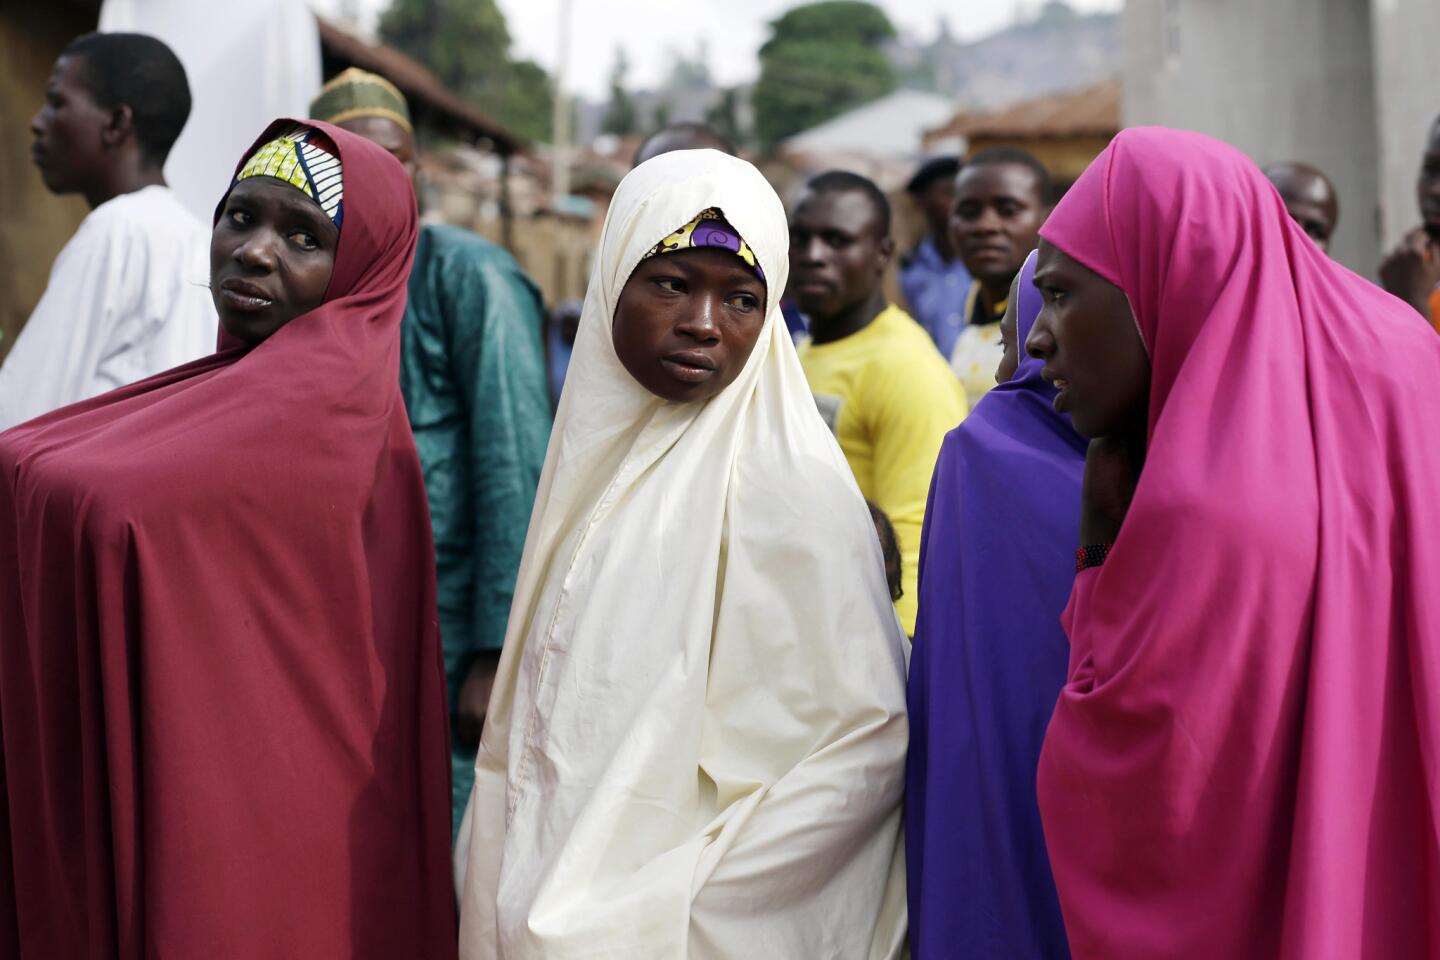 Nigerians wait to register before voting in Jere, northeastern Nigeria.